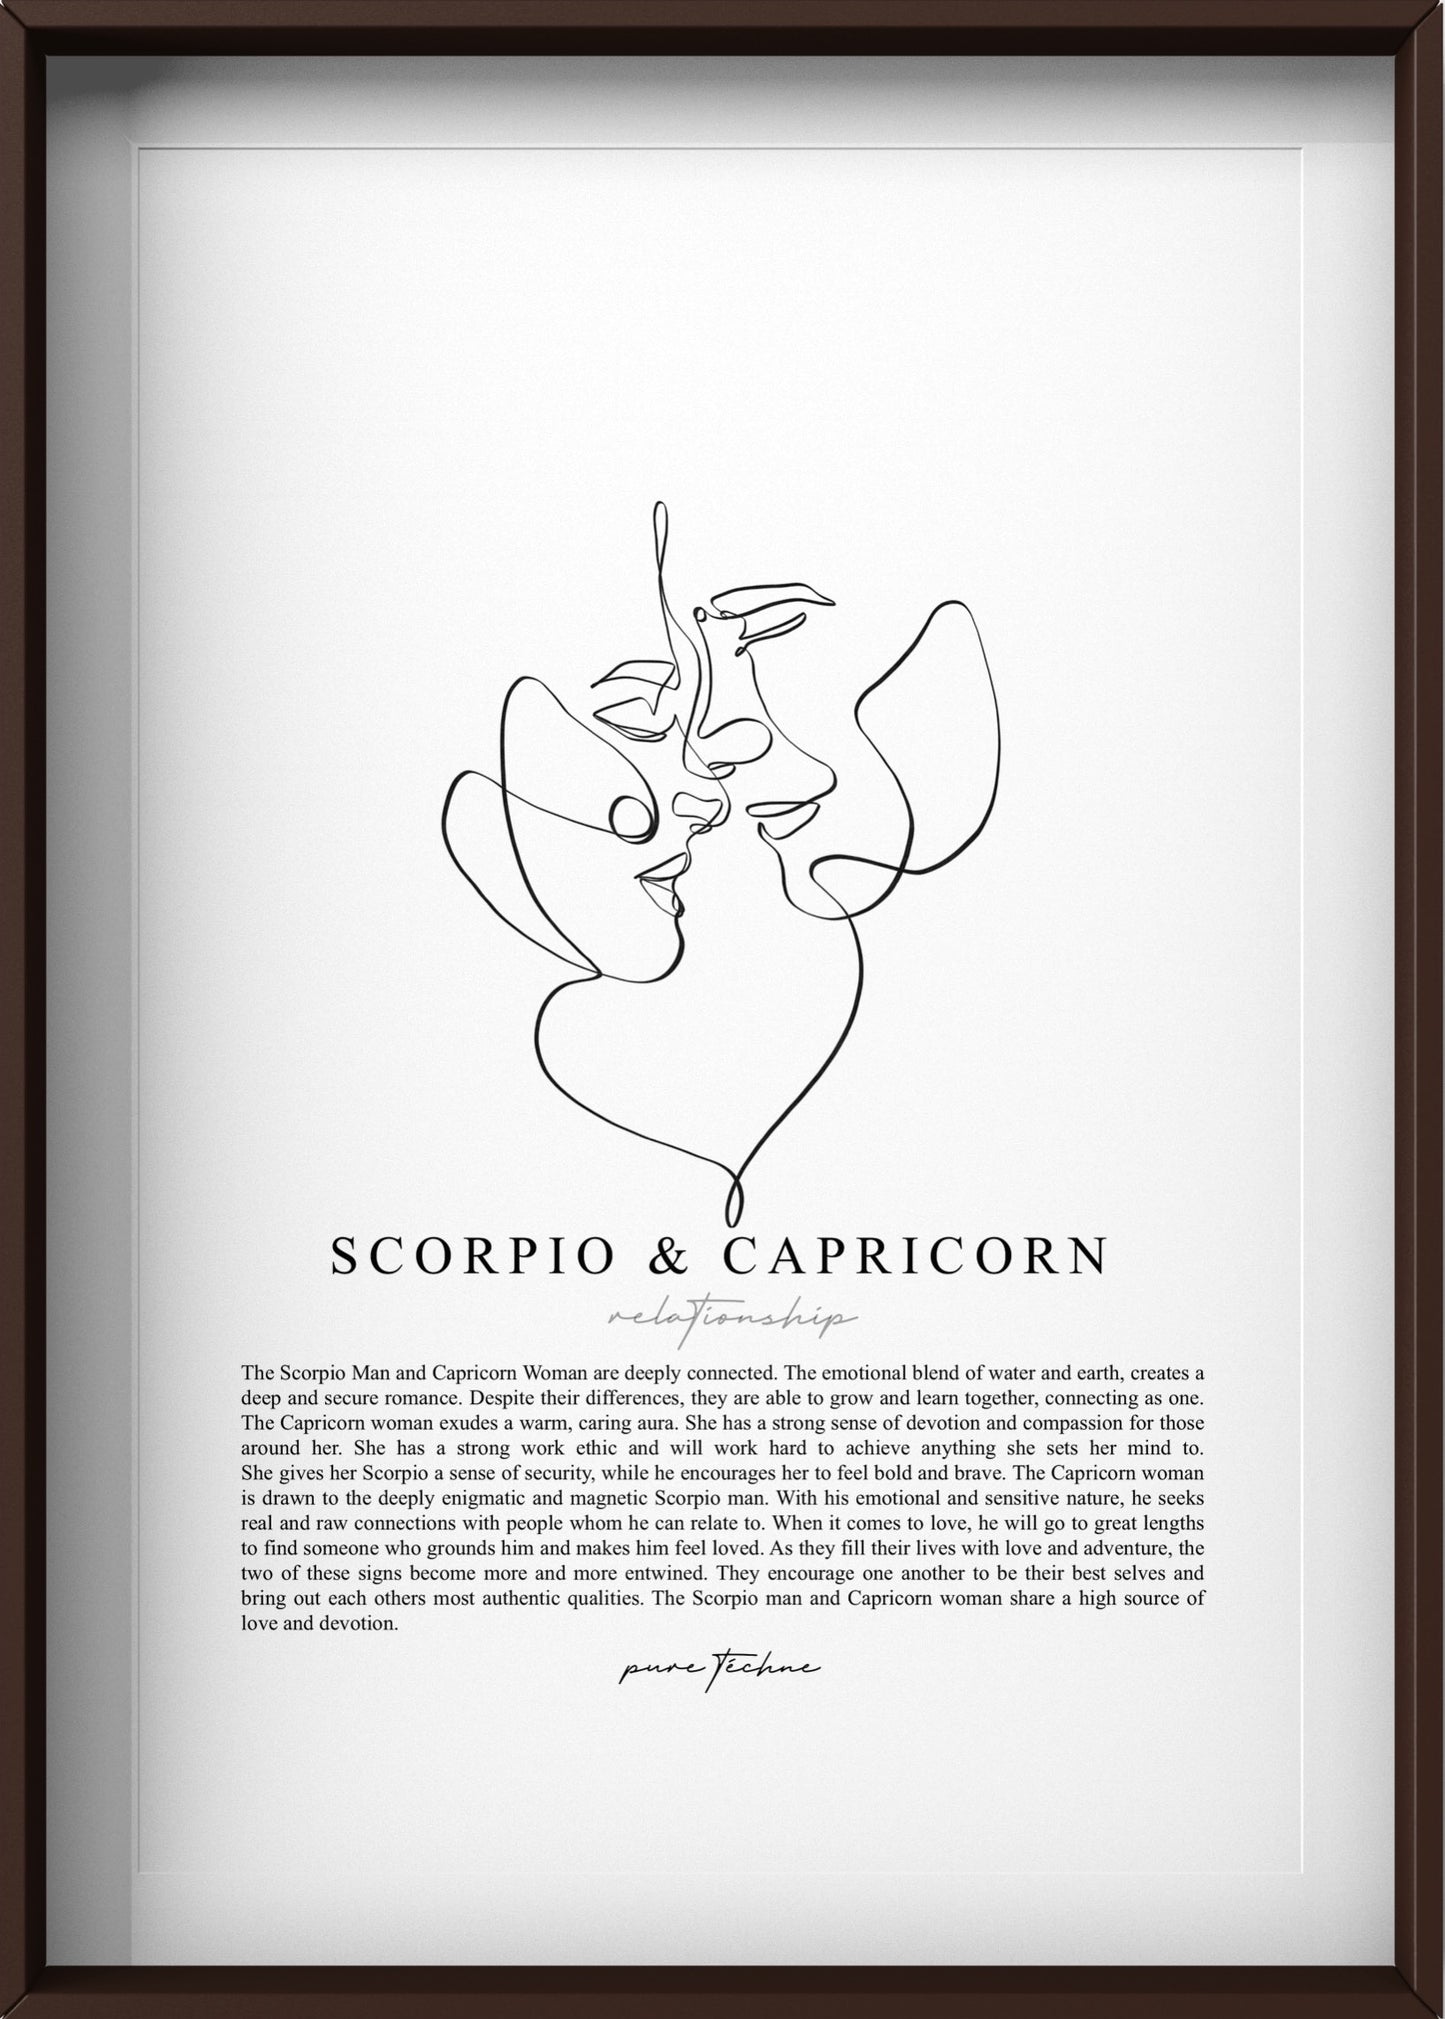 Scorpio Man & Capricorn Woman